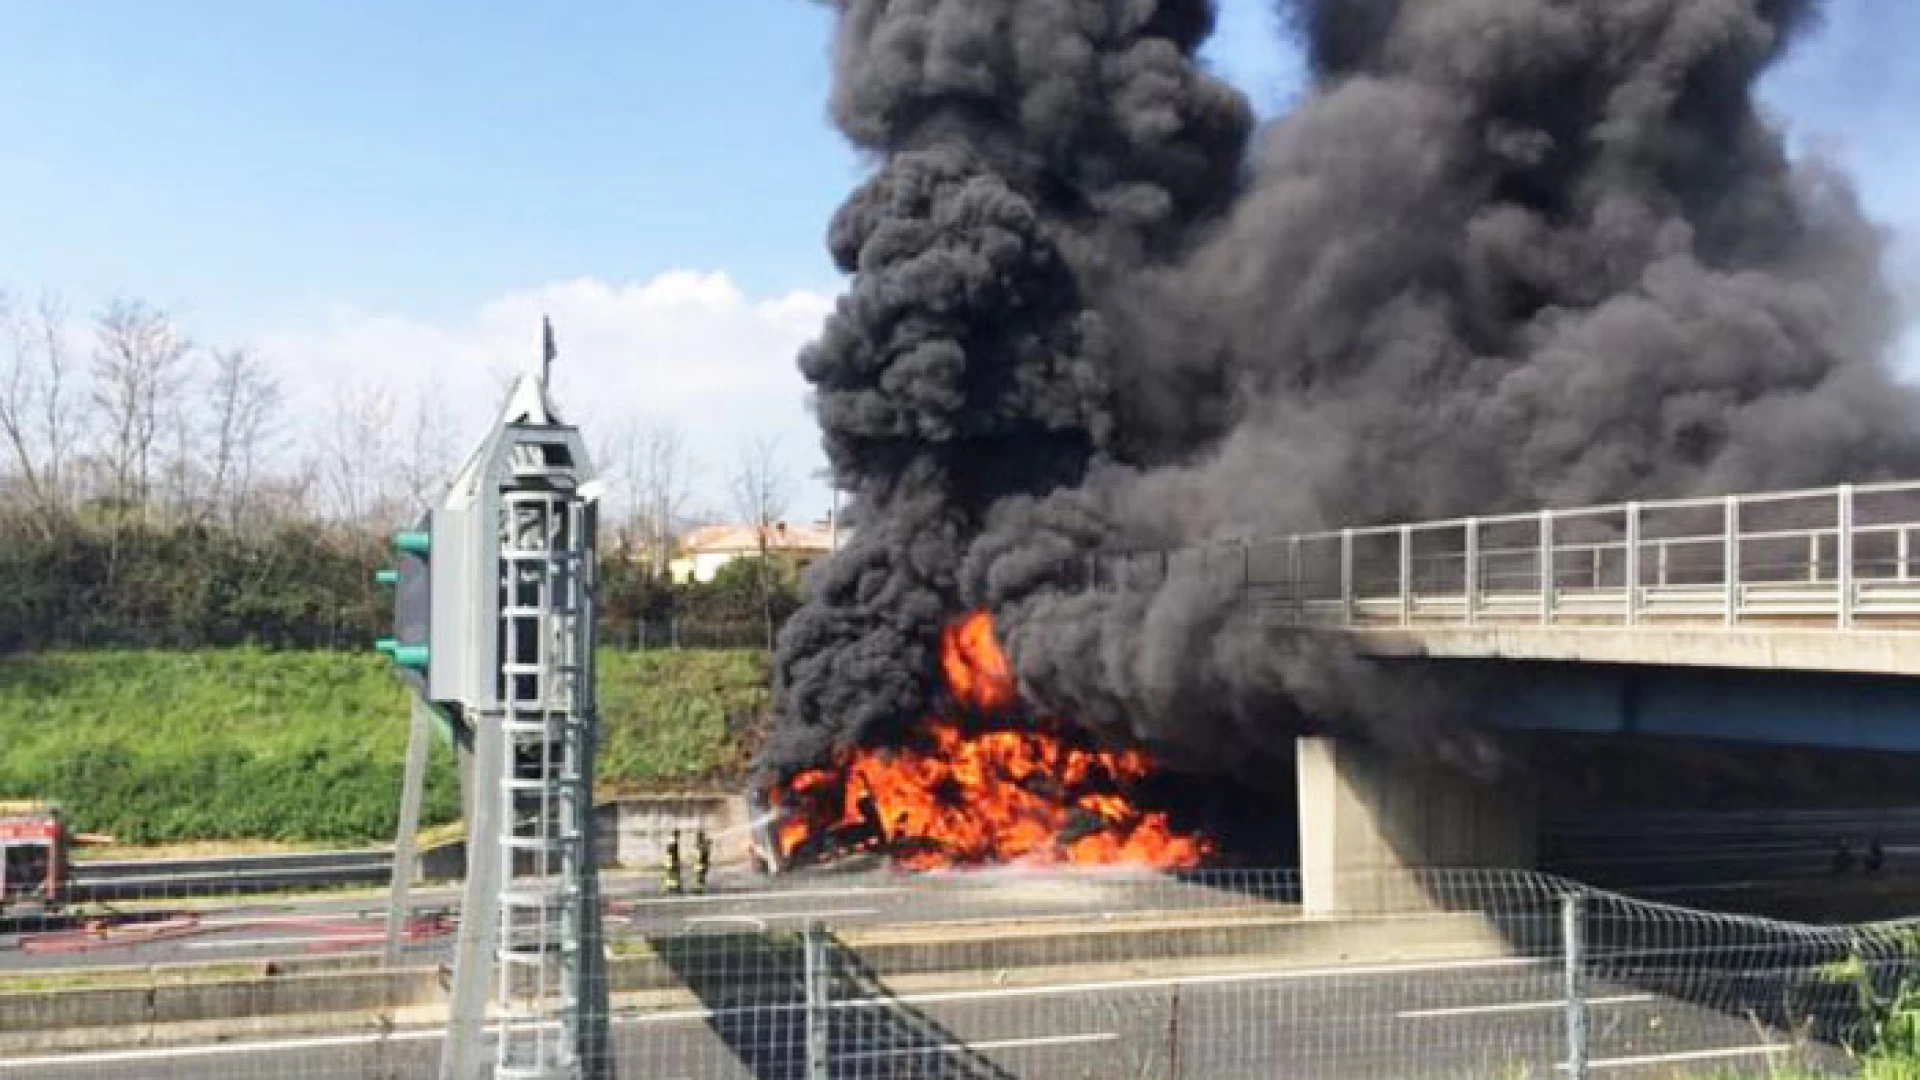 Caianello: sabato notte chiuso il tratto autostradale Caianello-Capua. La comunicazione di Autostrade per l’Italia.  Verrà demolito il cavalcavia andato in fiamme.